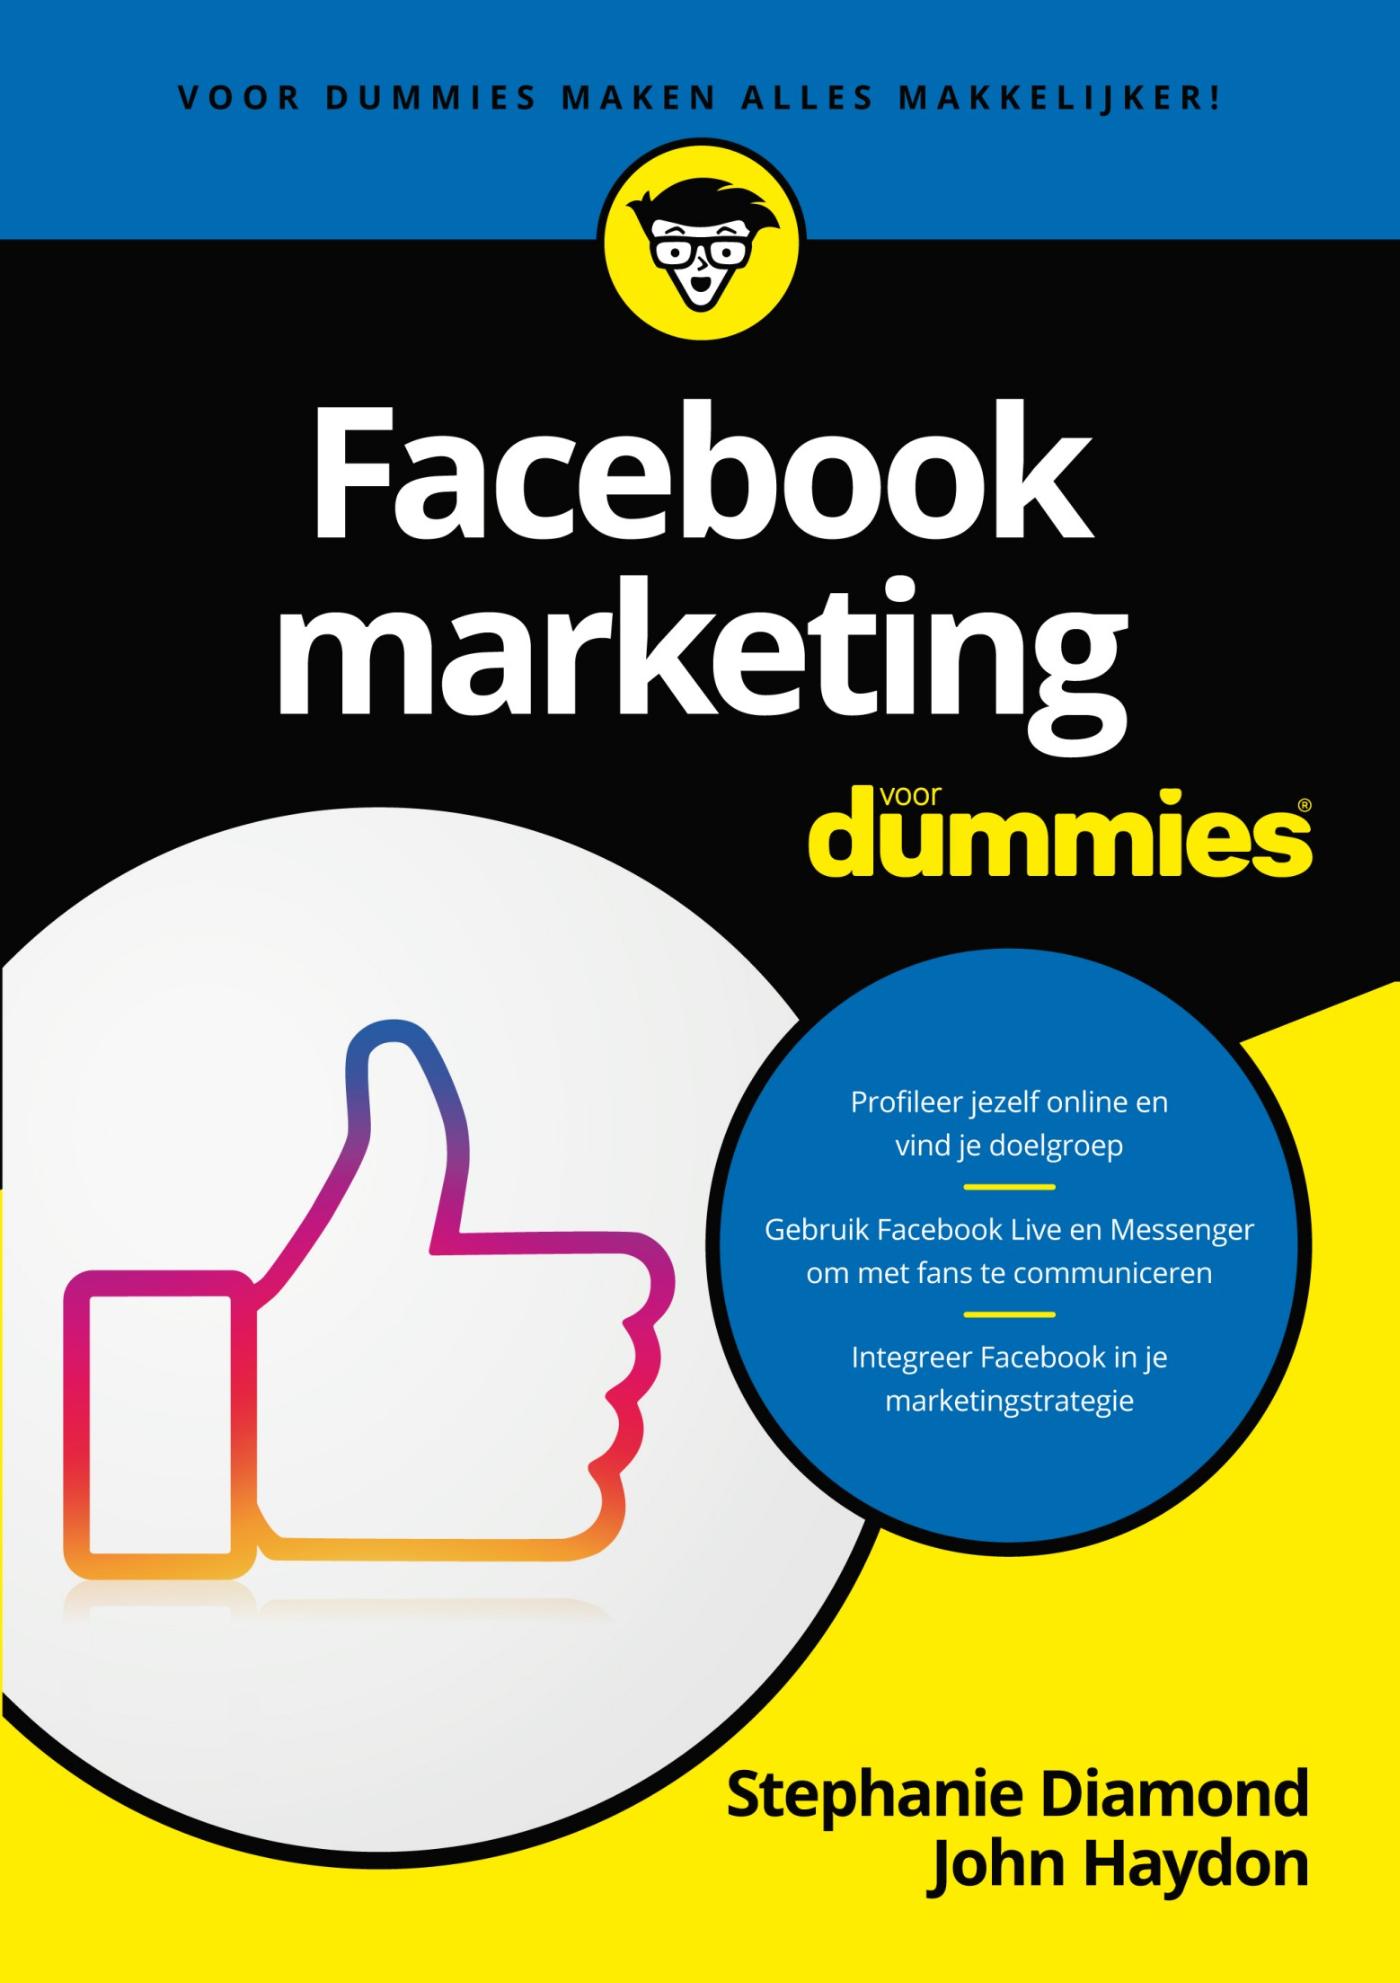 Facebookmarketing voor Dummies (Ebook)